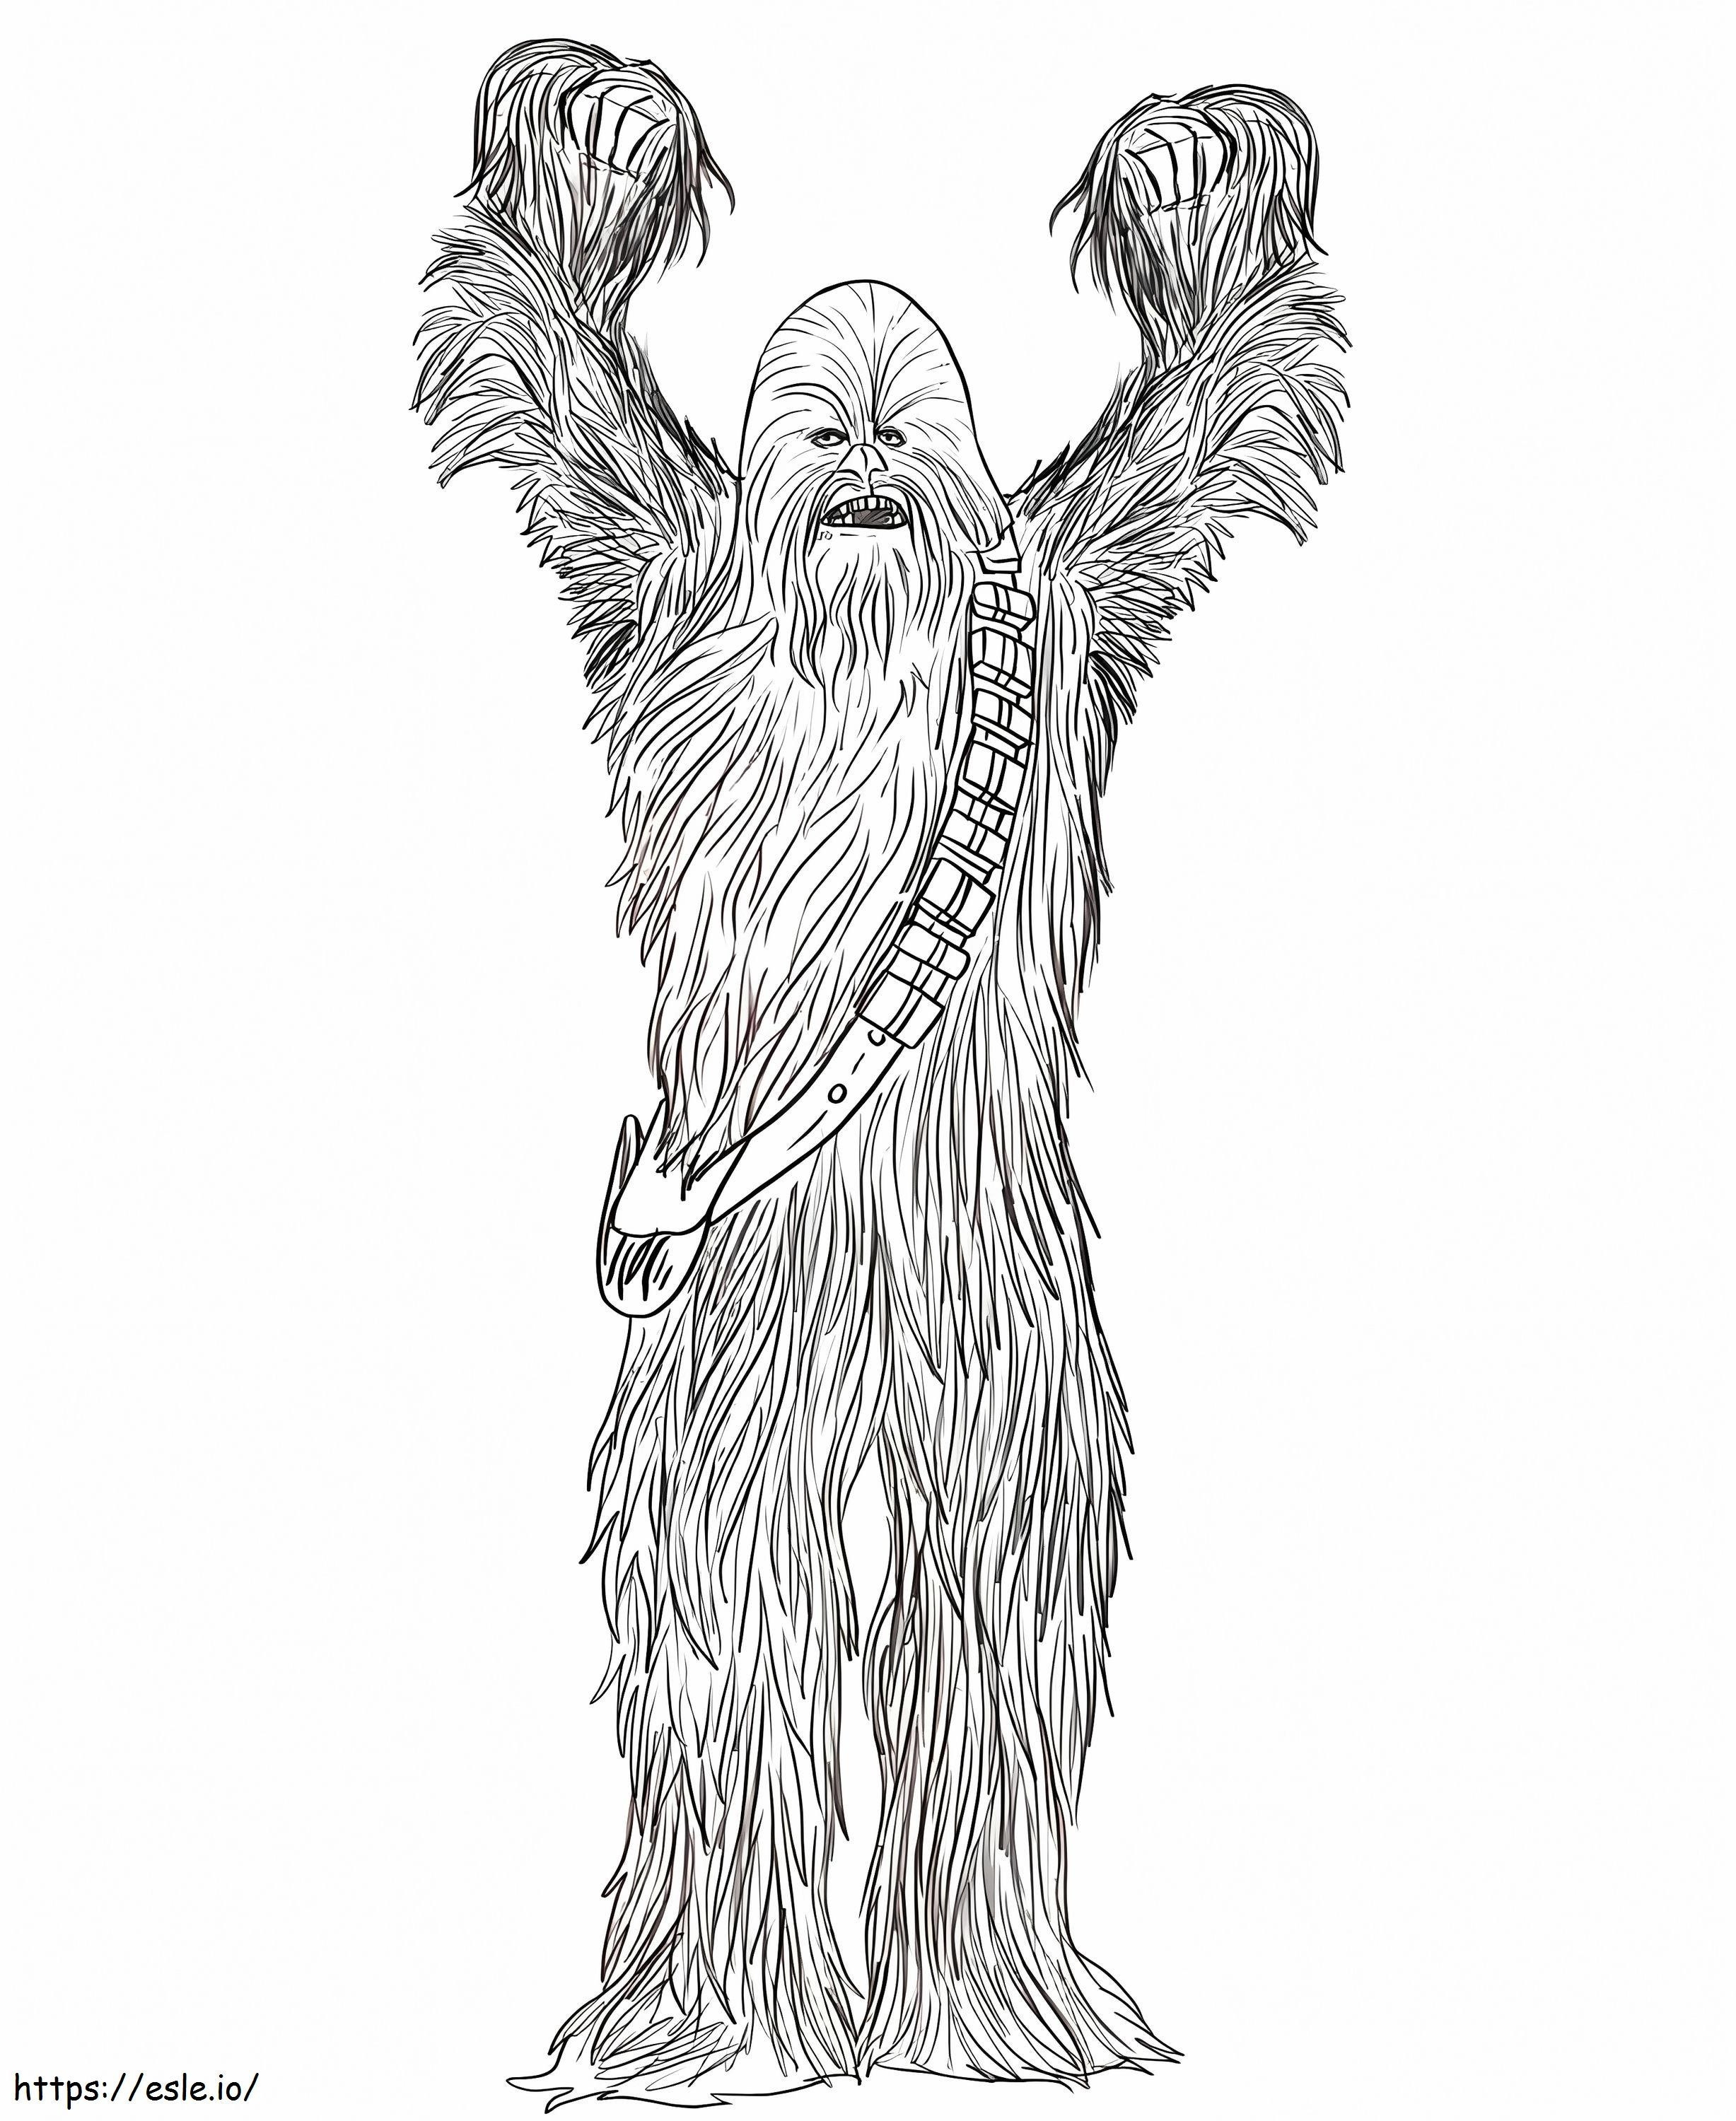 Coloriage Star Wars Chewbacca à imprimer dessin